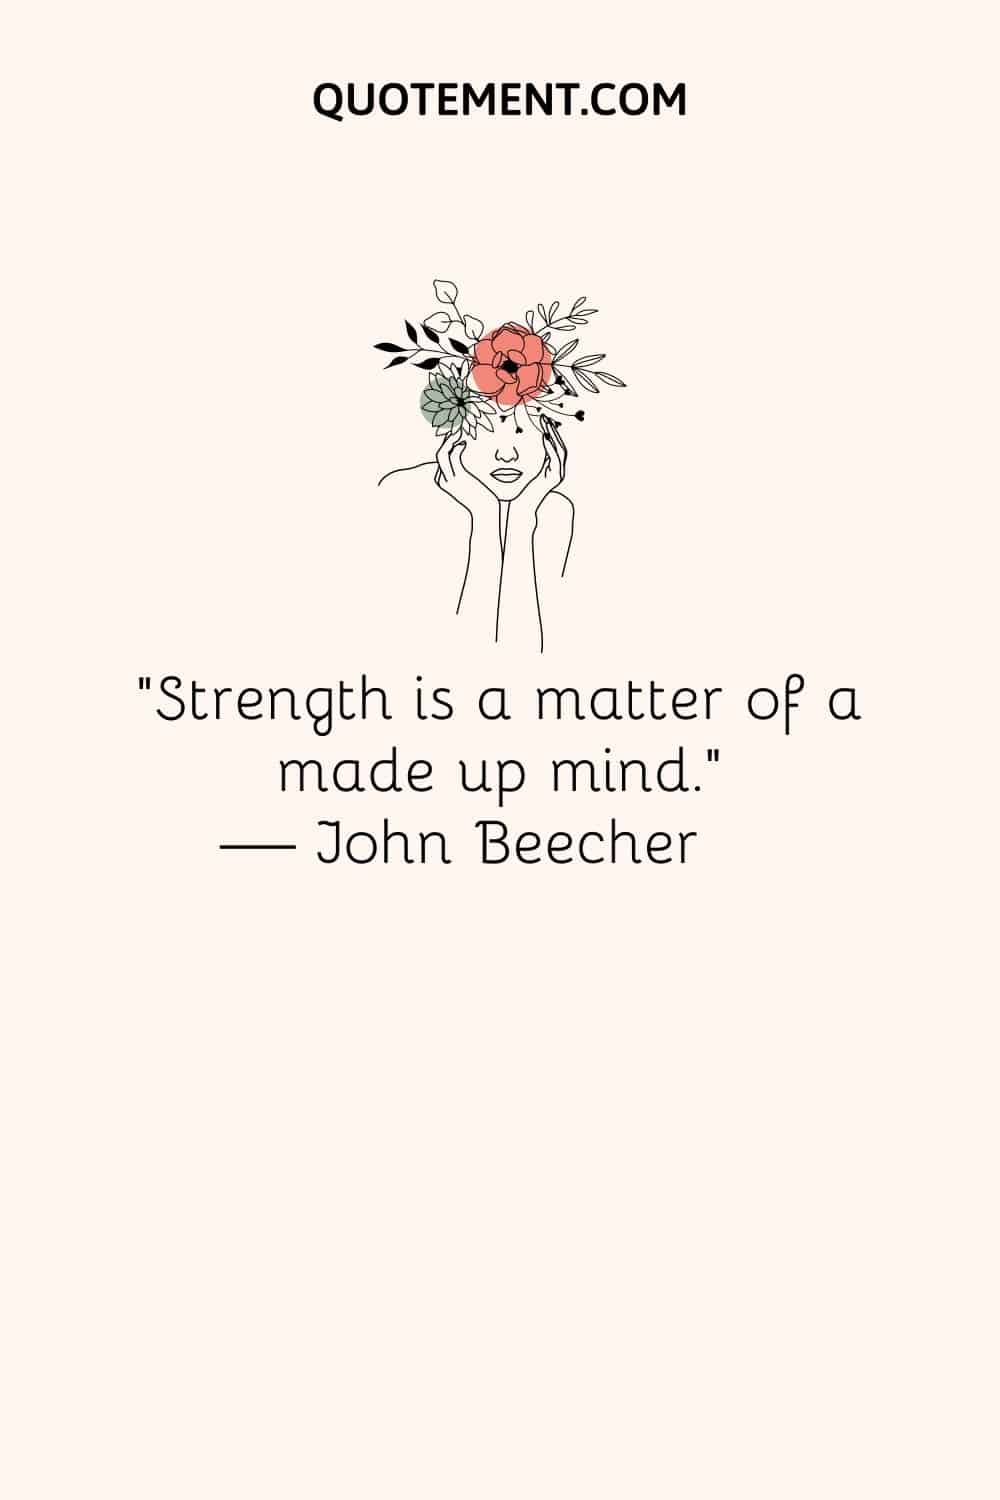 “Strength is a matter of a made up mind.” ― John Beecher